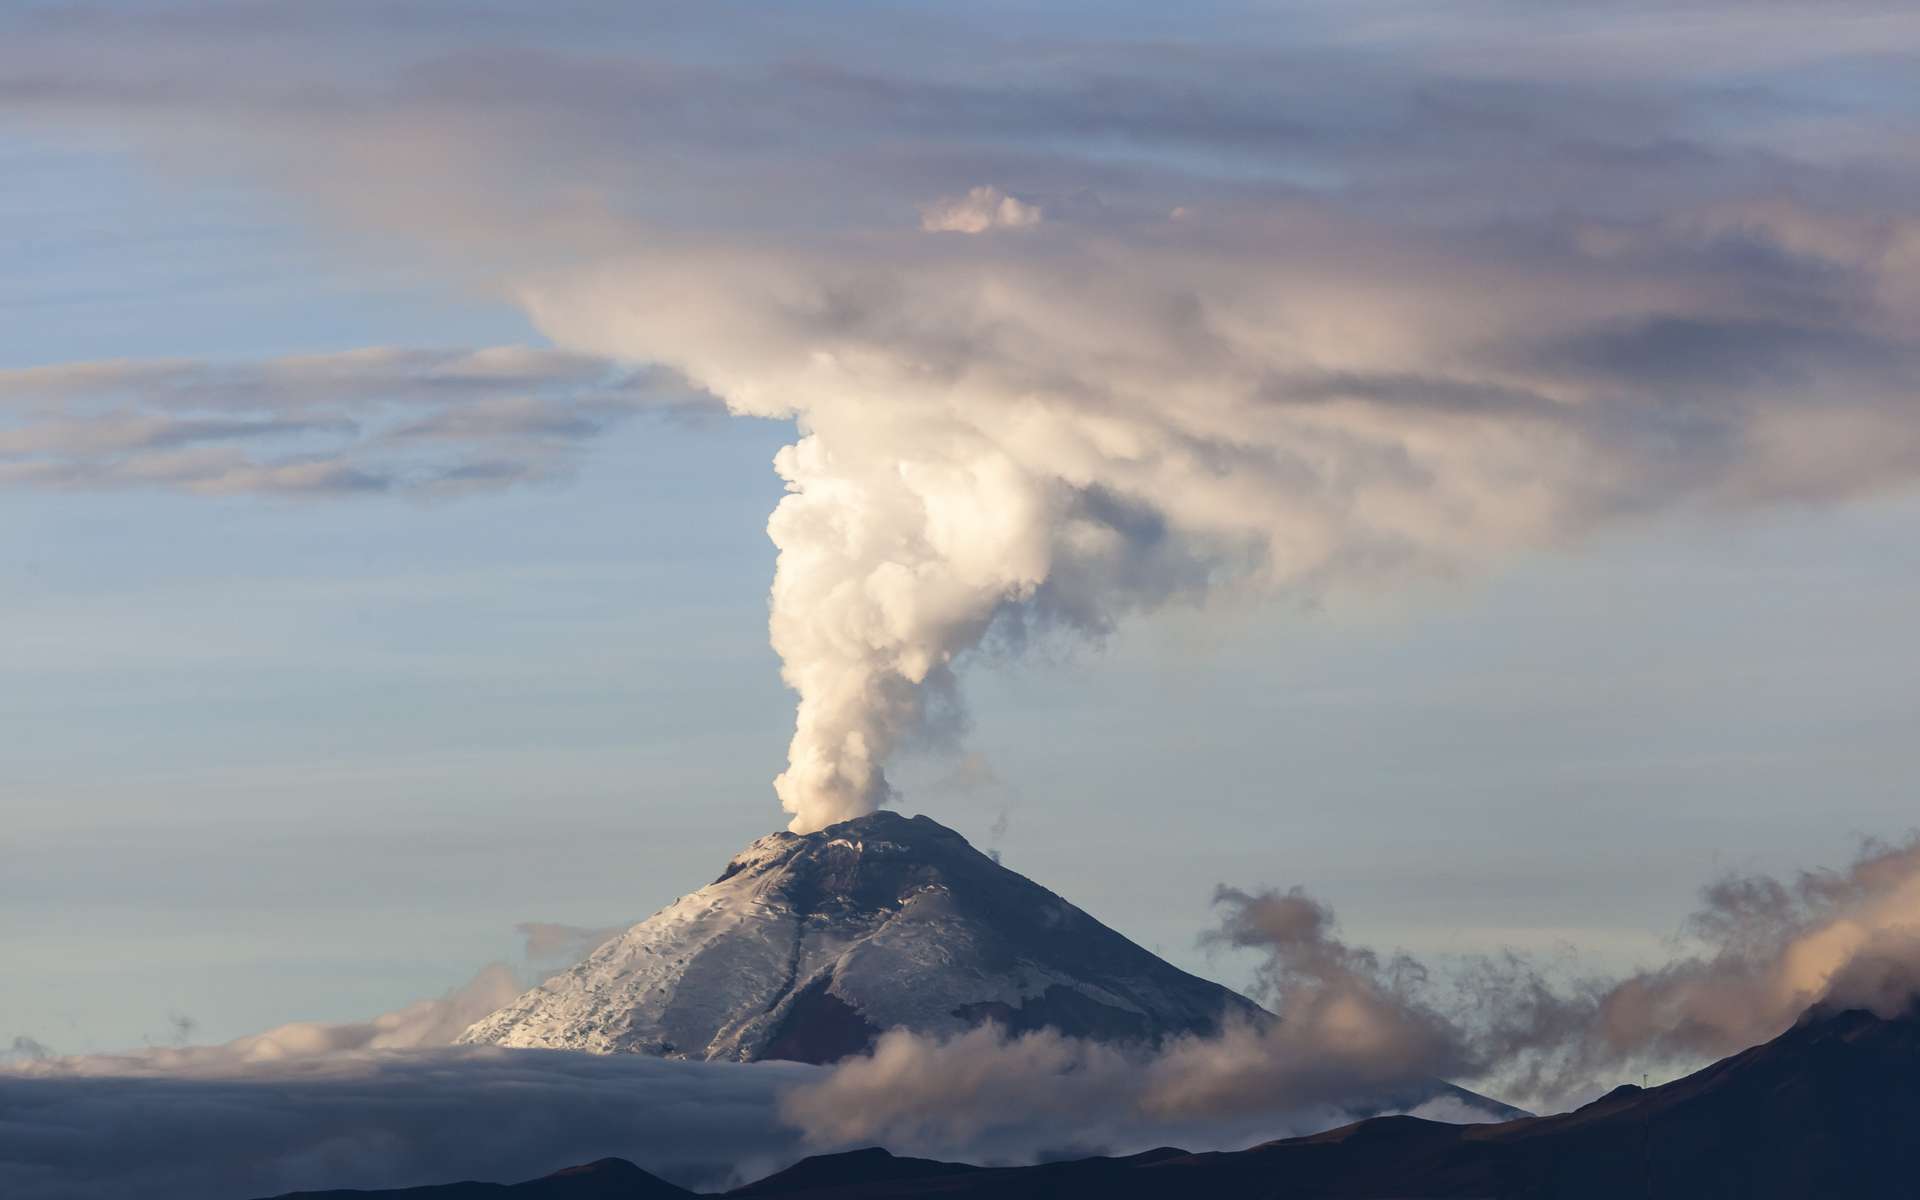 De quelles façons les géologues peuvent-ils anticiper une éruption ?